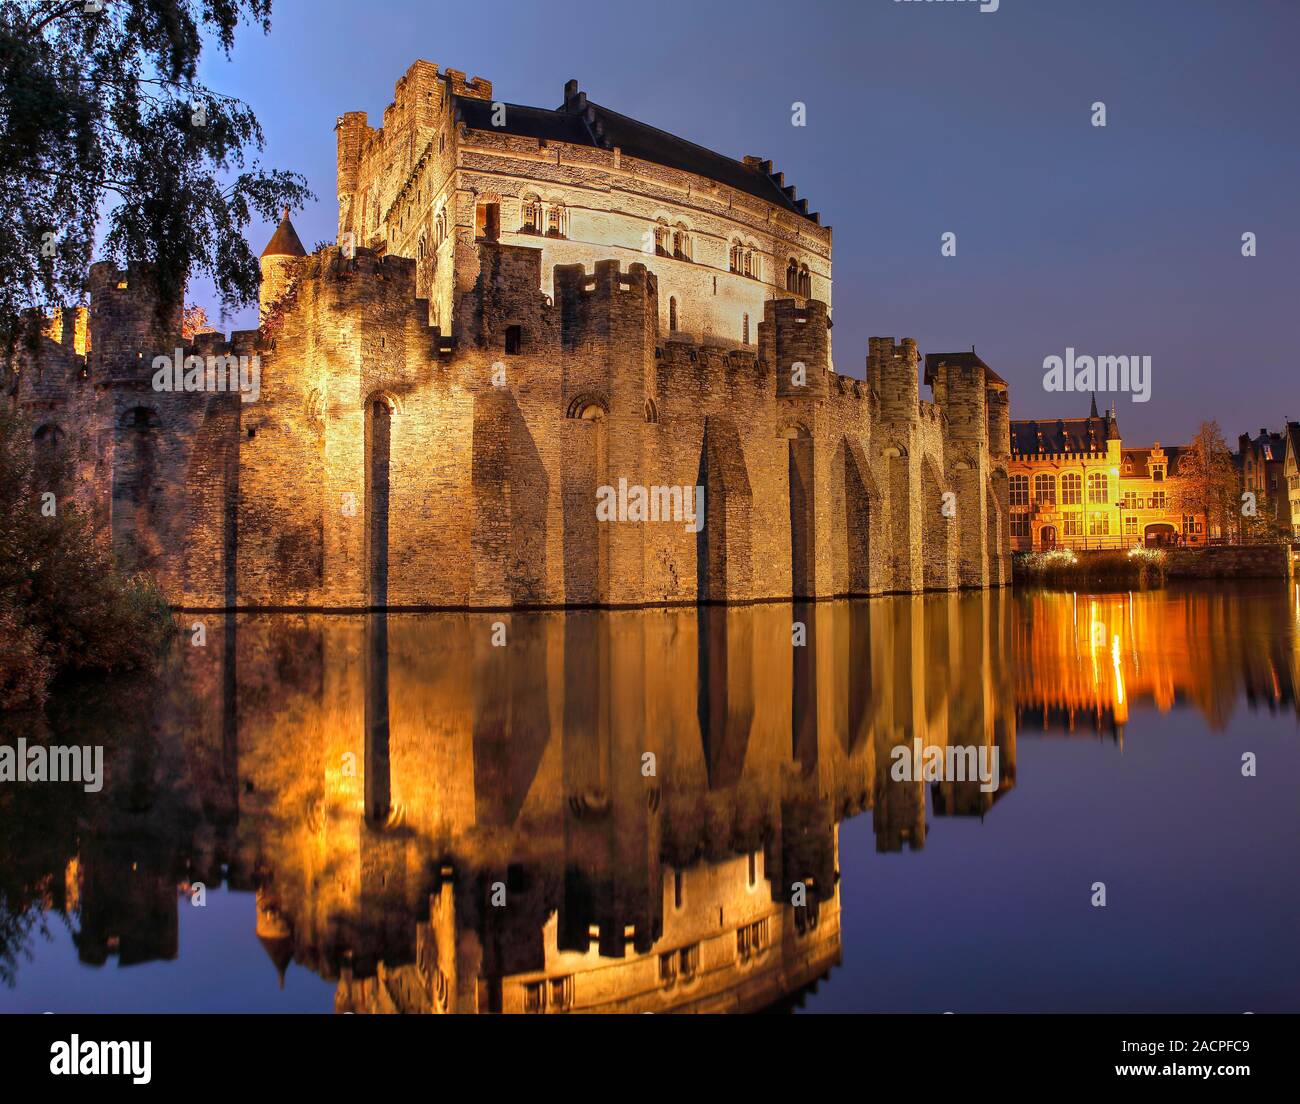 Château Gravensteen illuminée au crépuscule avec de l'eau reflet, château à douves, Gand, Flandre orientale, Belgique Banque D'Images